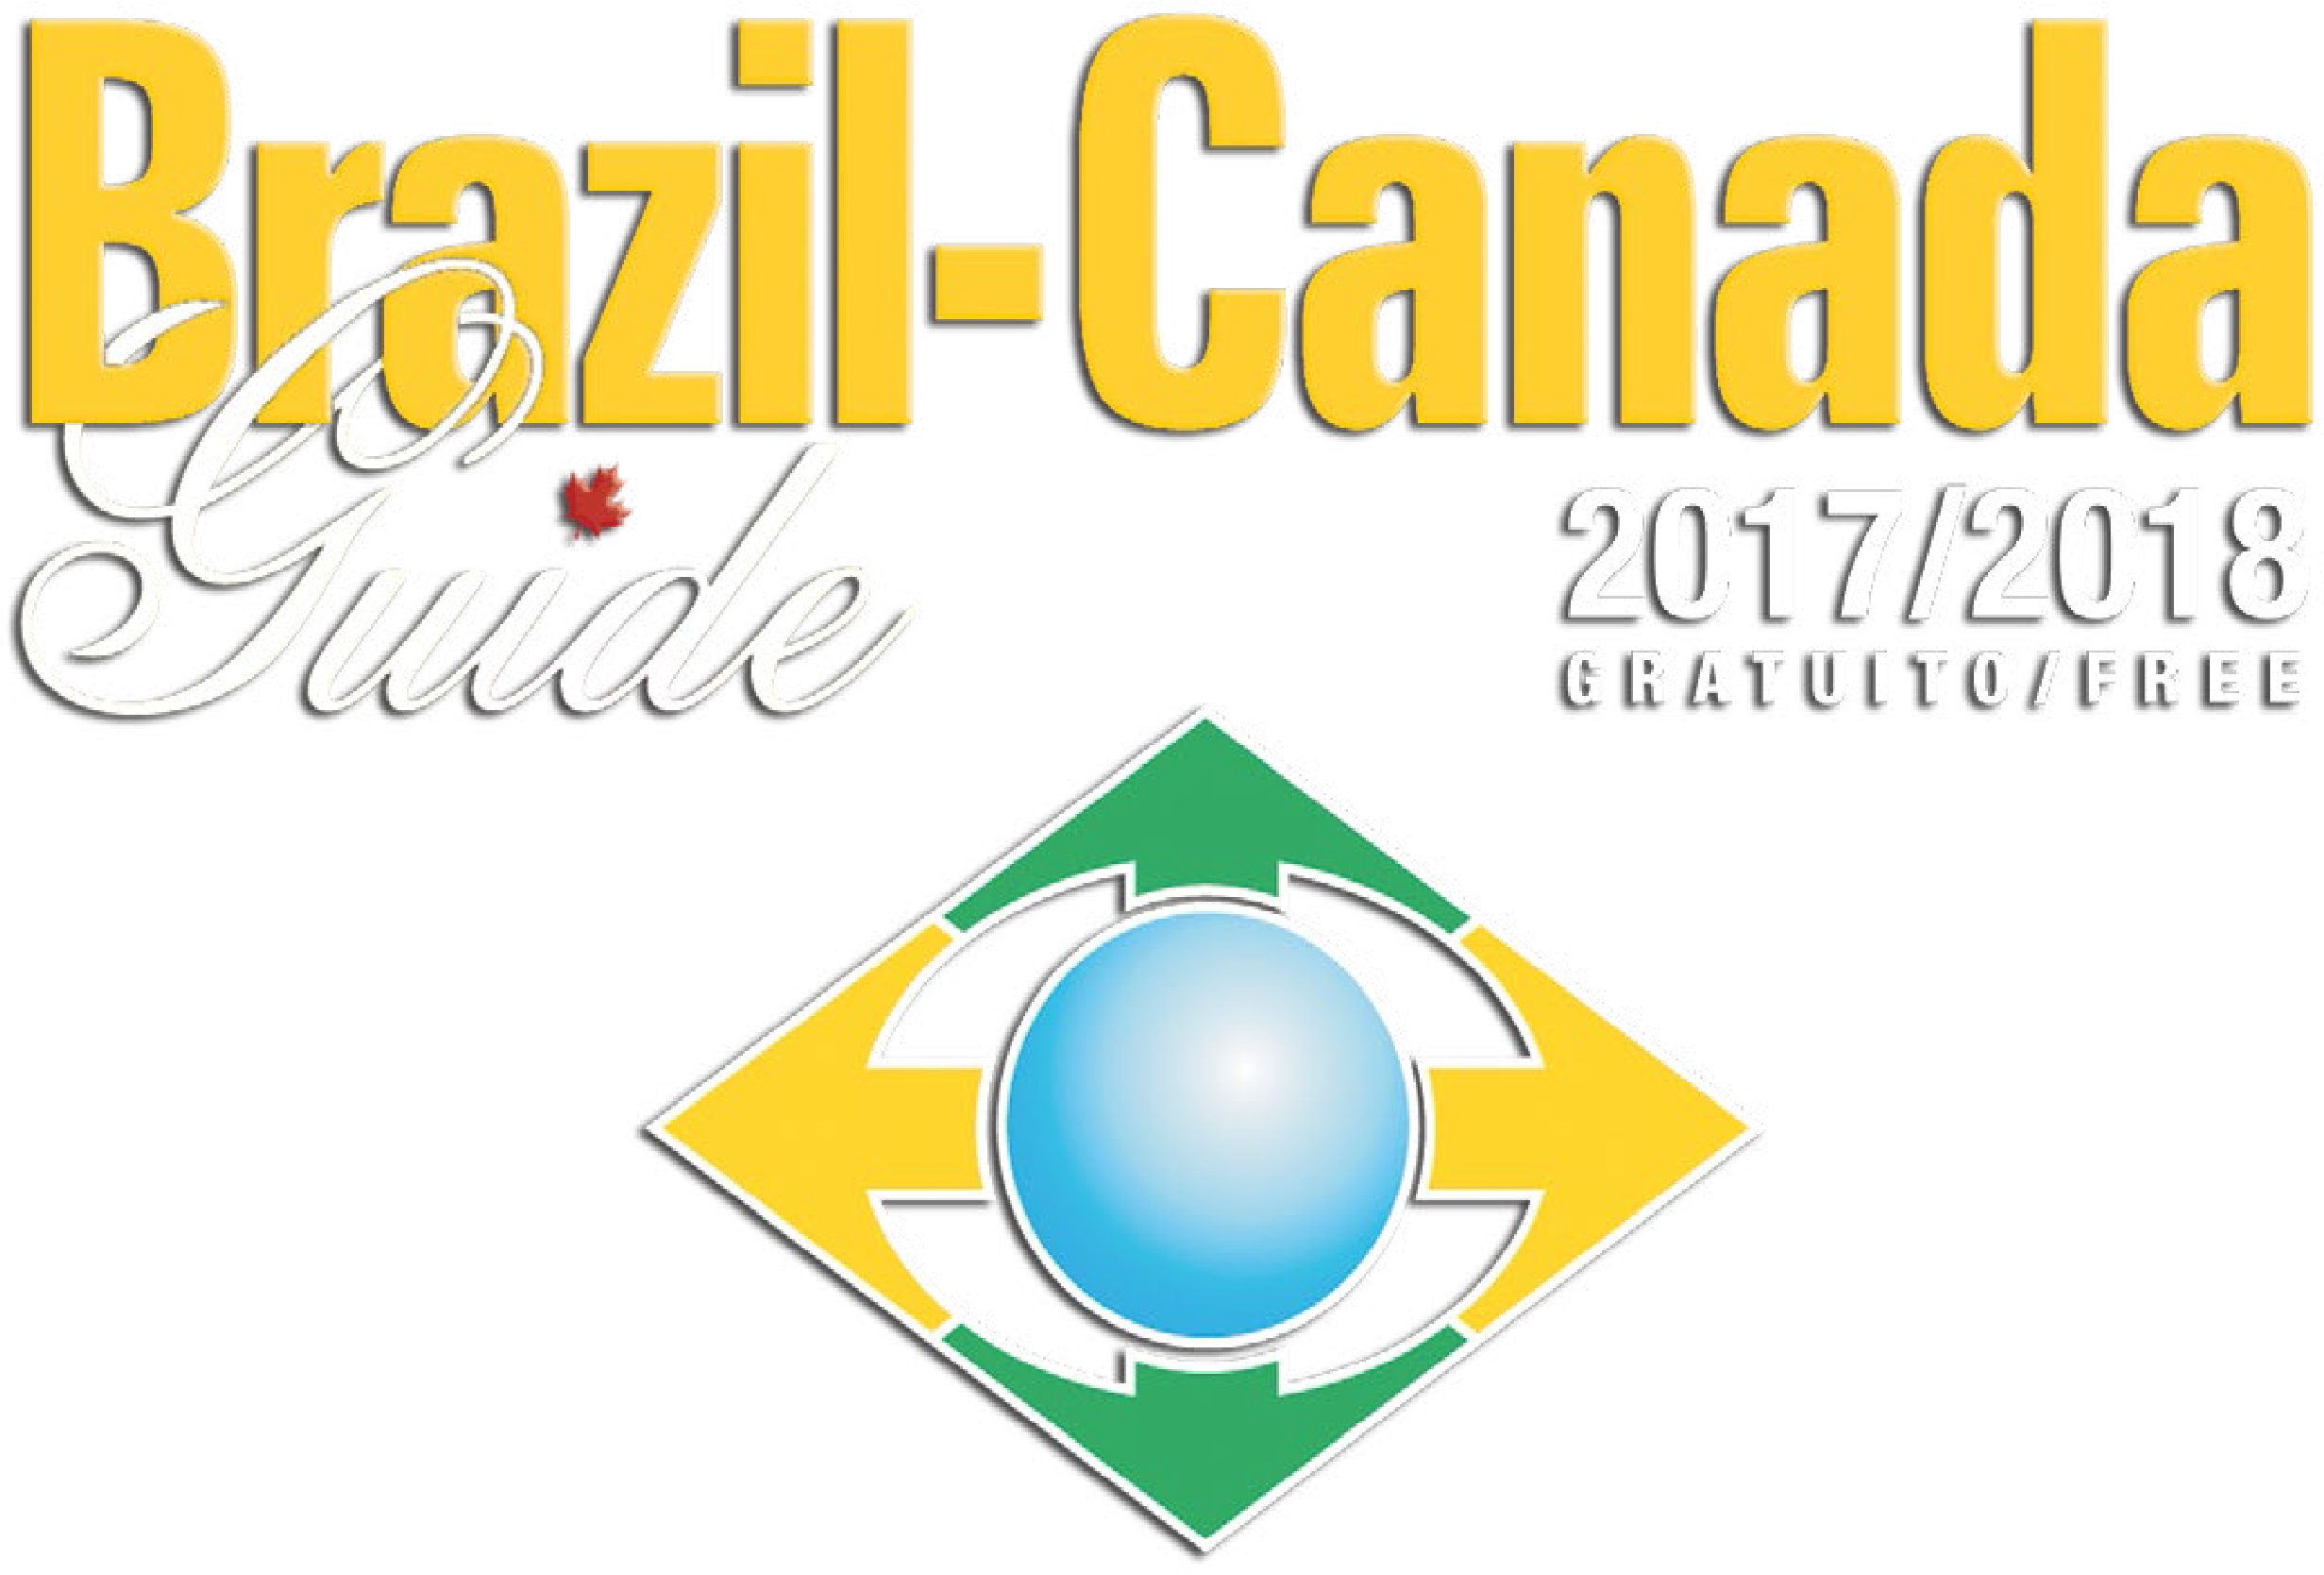 Brazil-canada Guide - Graphic Design (2509x1735)